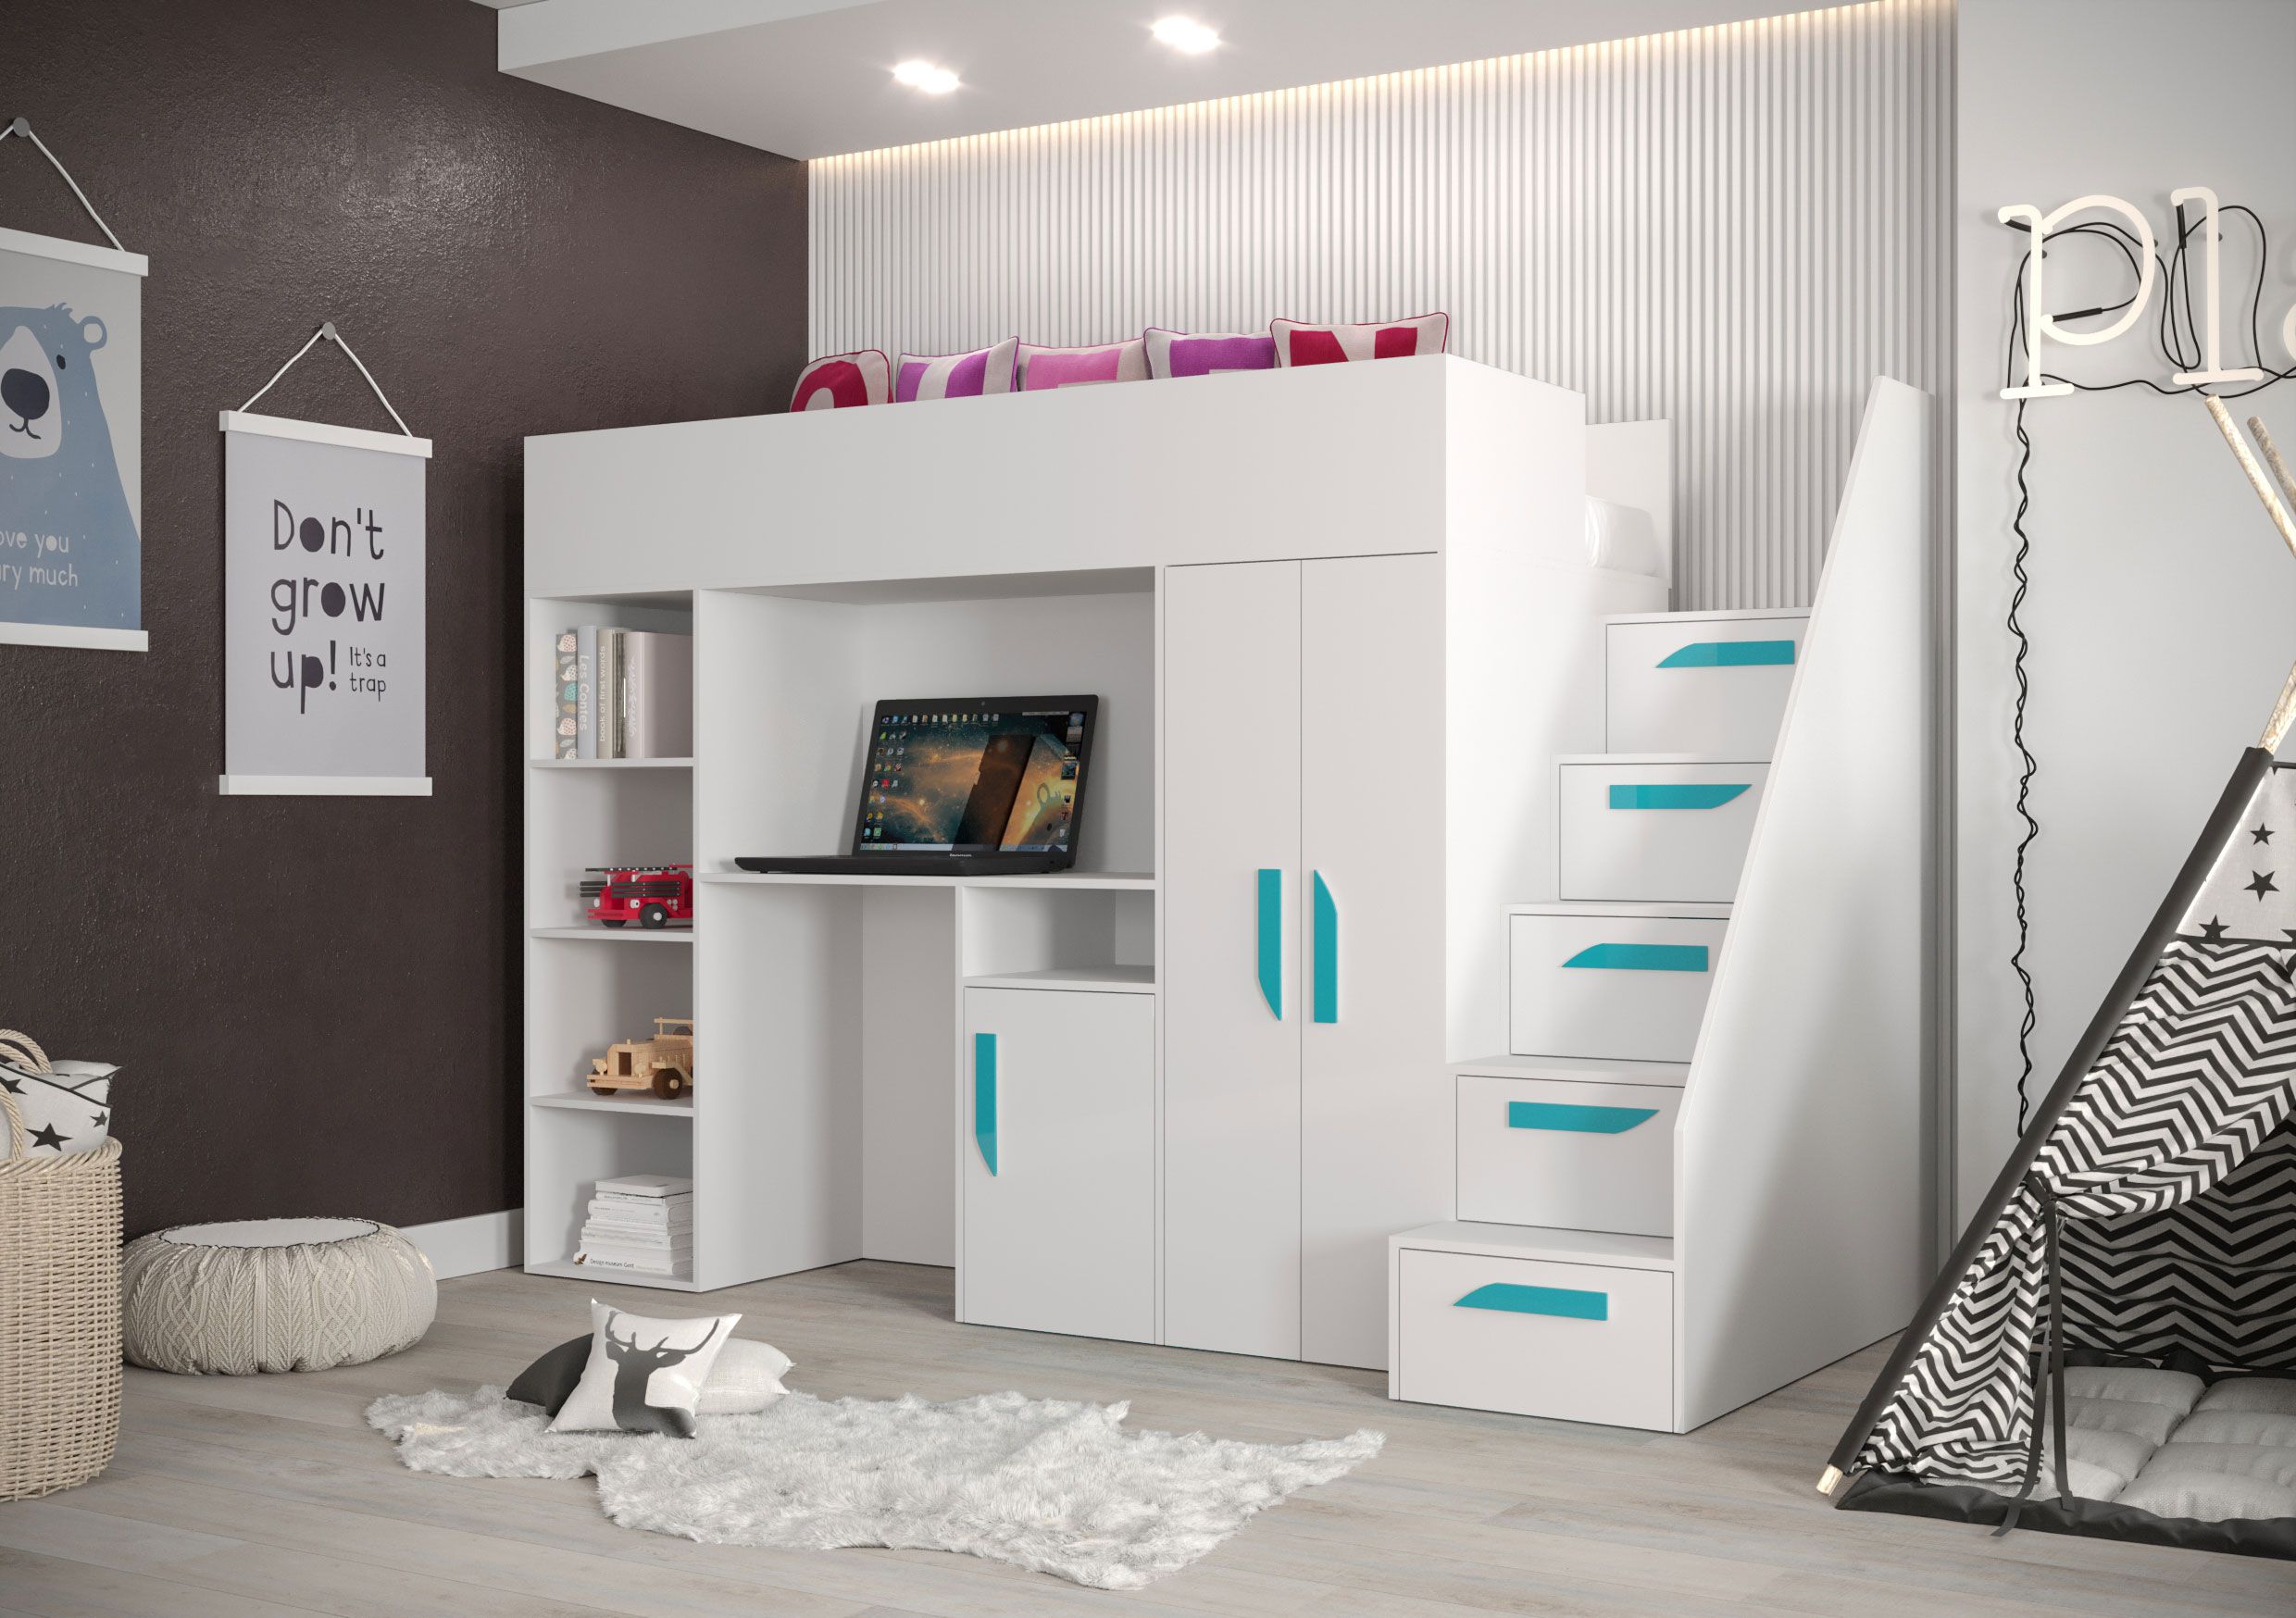 Lit fonctionnel / lit d'enfant / lit surélevé avec espace de rangement et bureau Jura 21, couleur : blanc / turquoise - dimensions : 165 x 247 x 120 cm (h x l x p)